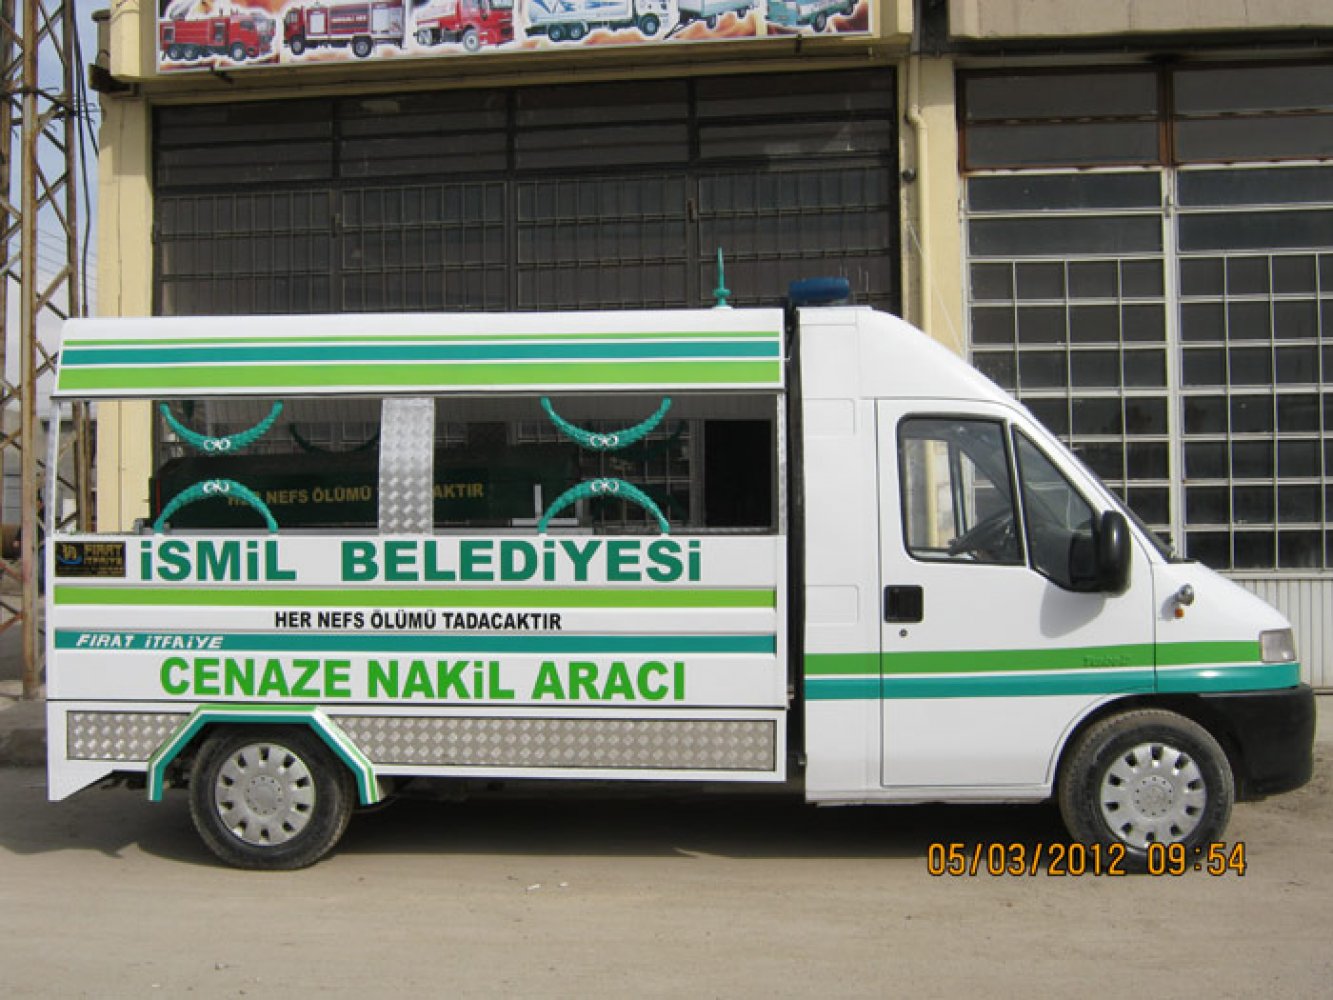 İsmil Belediyesi Cenaze Nakil Aracı